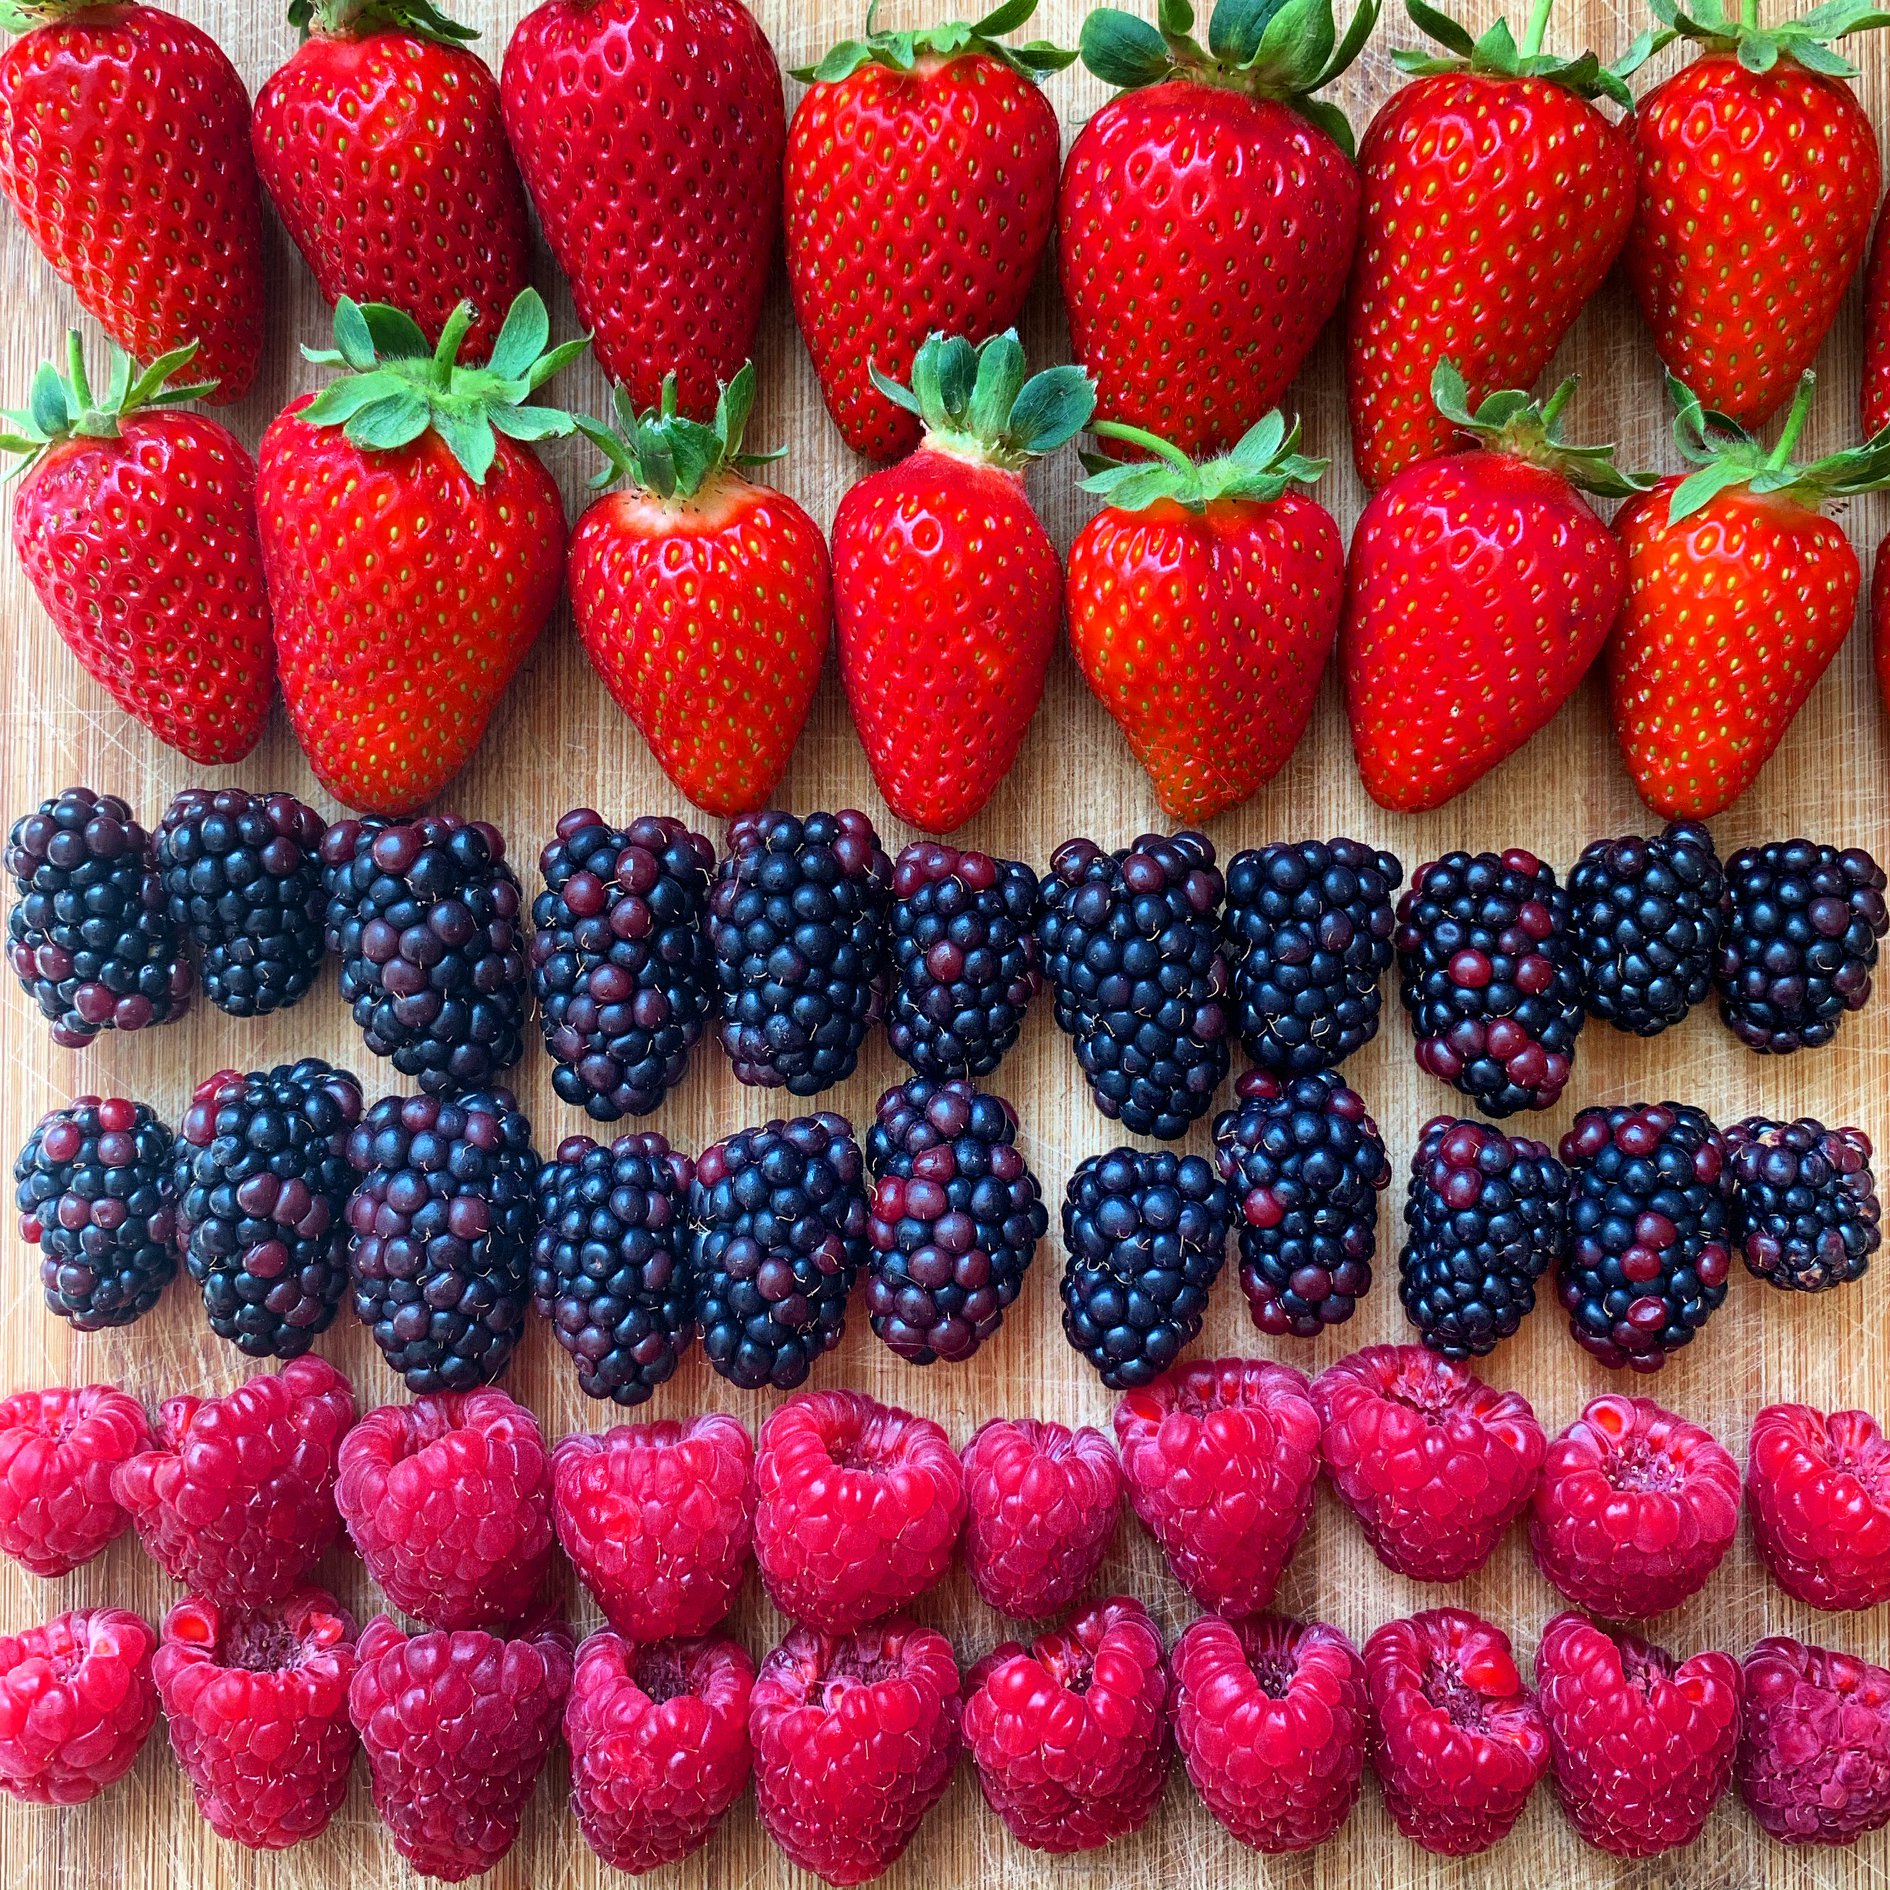 Strawberries, blackberries and raspberries from Watts Farm in Kent